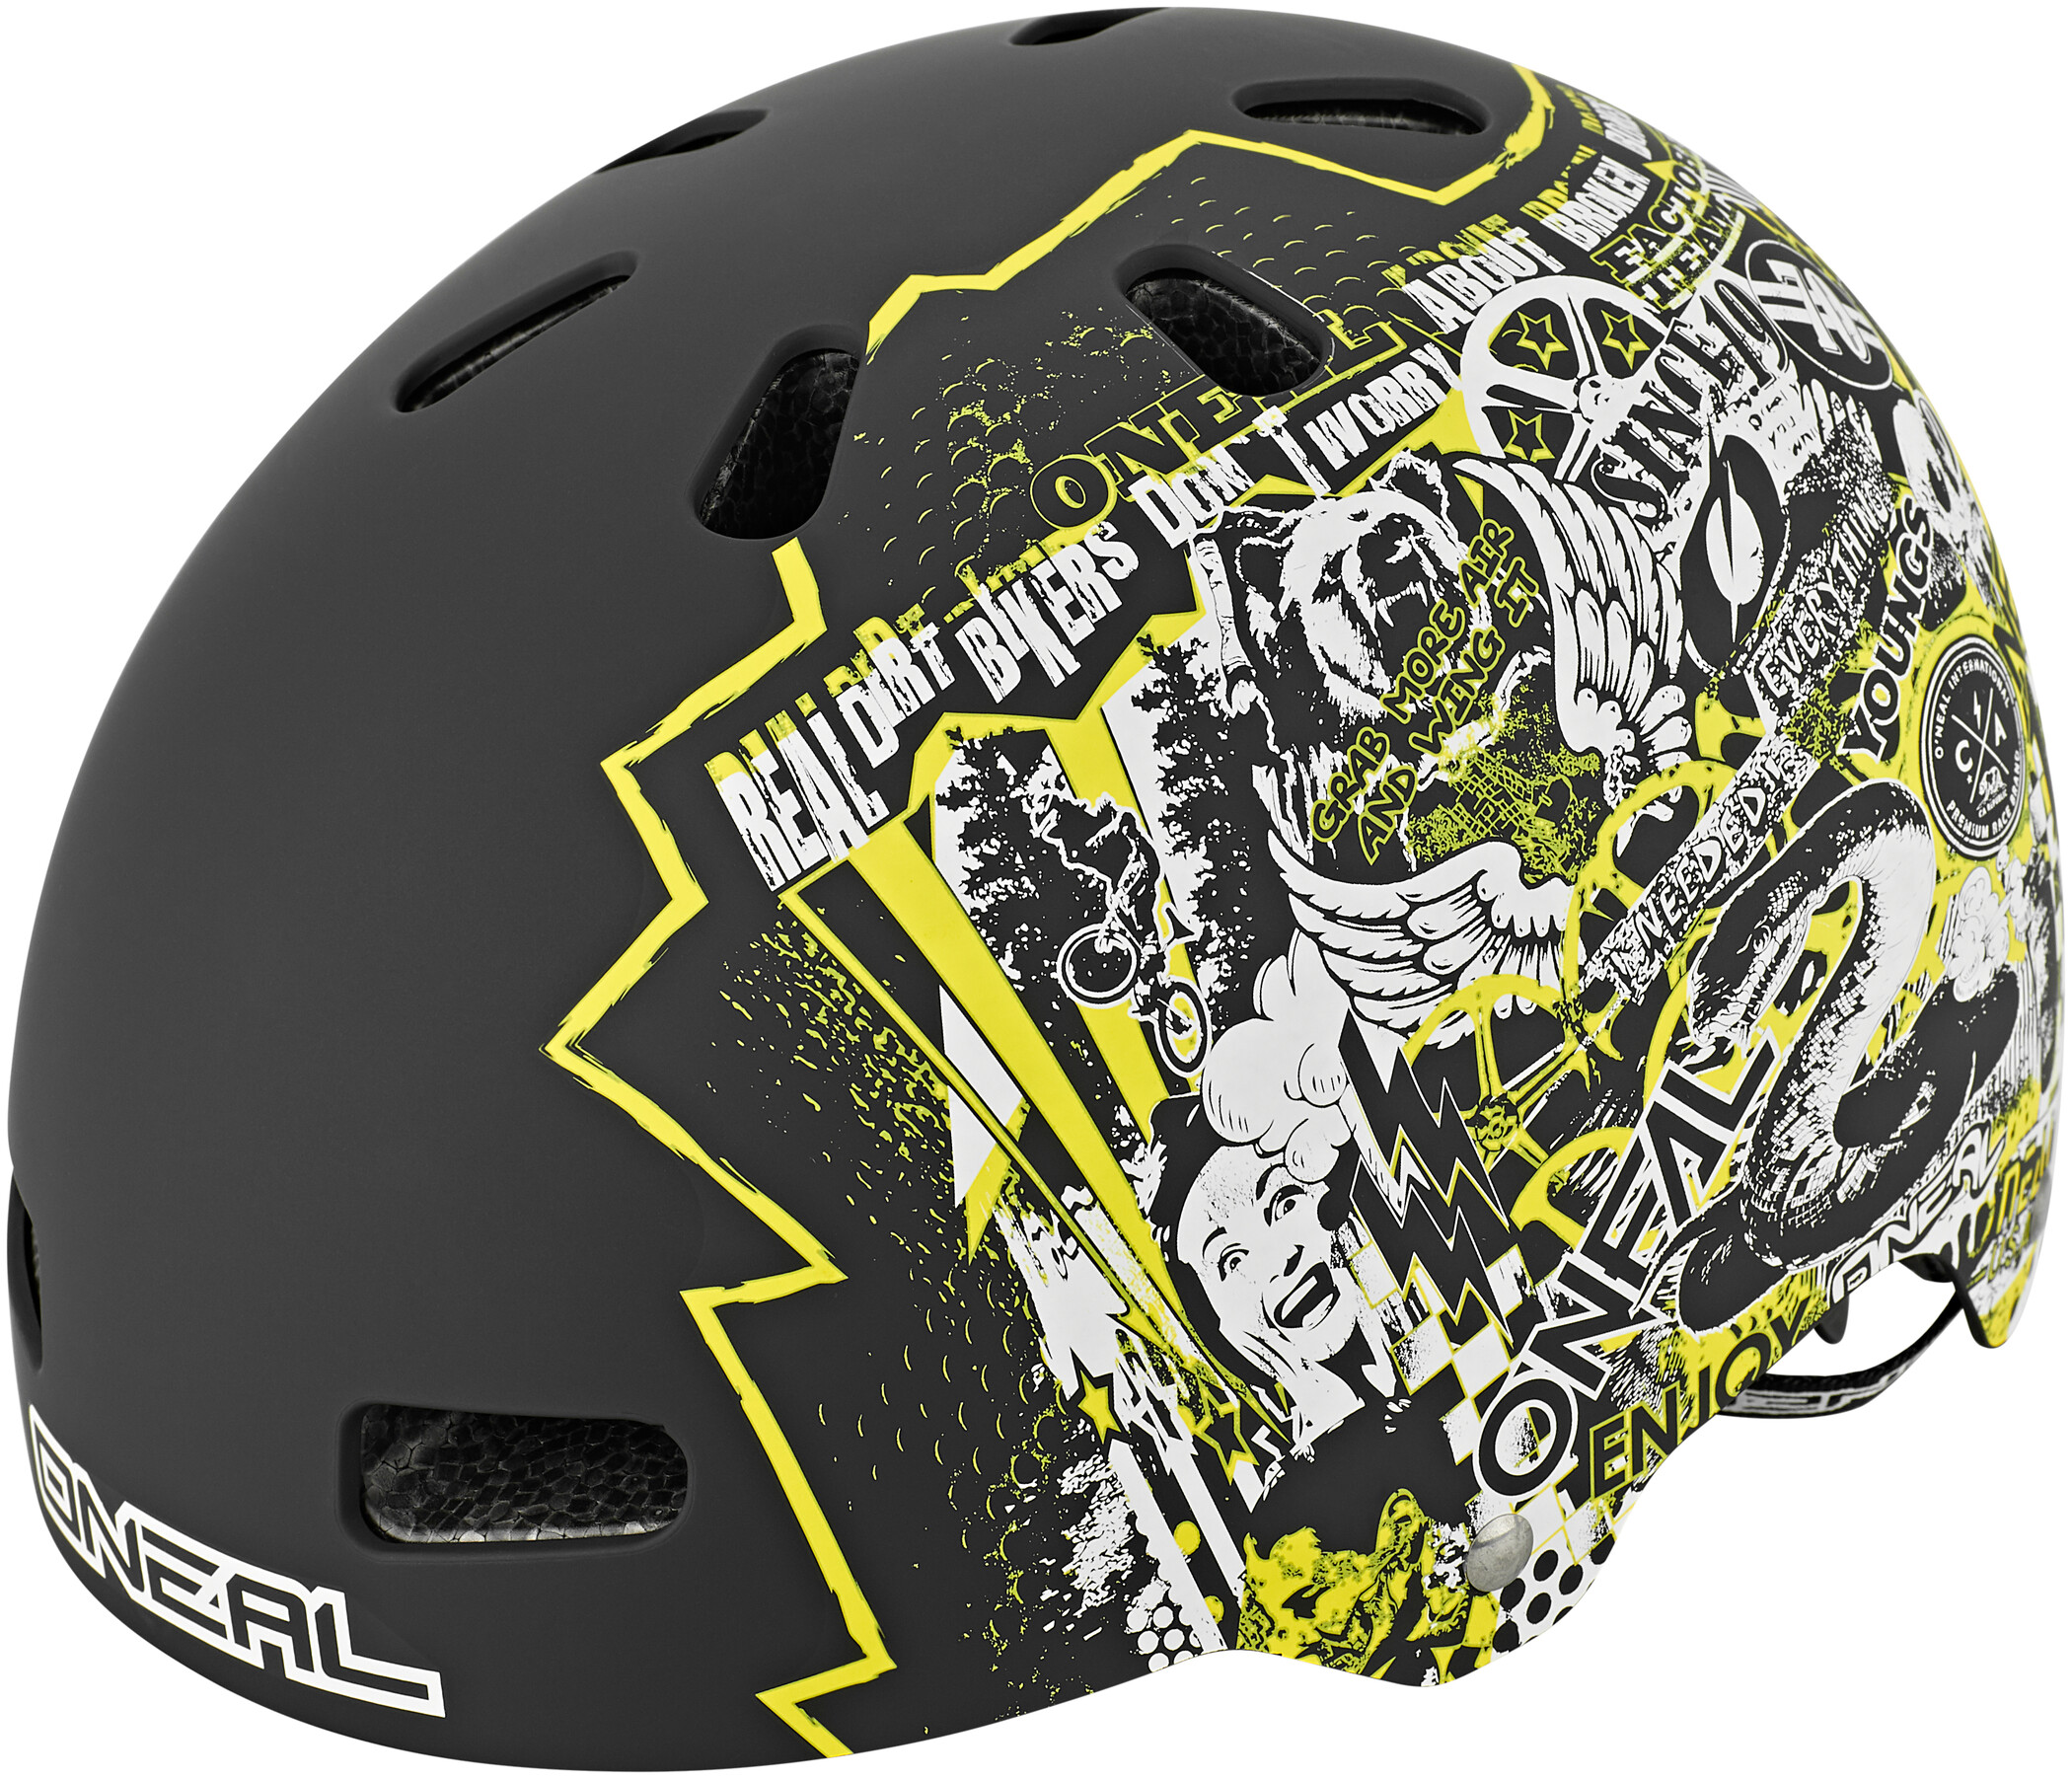 BMX Fahrrad Helm schwarz/weiß/gelb 2020 Oneal O'neal Lid ZF Rift Dirt